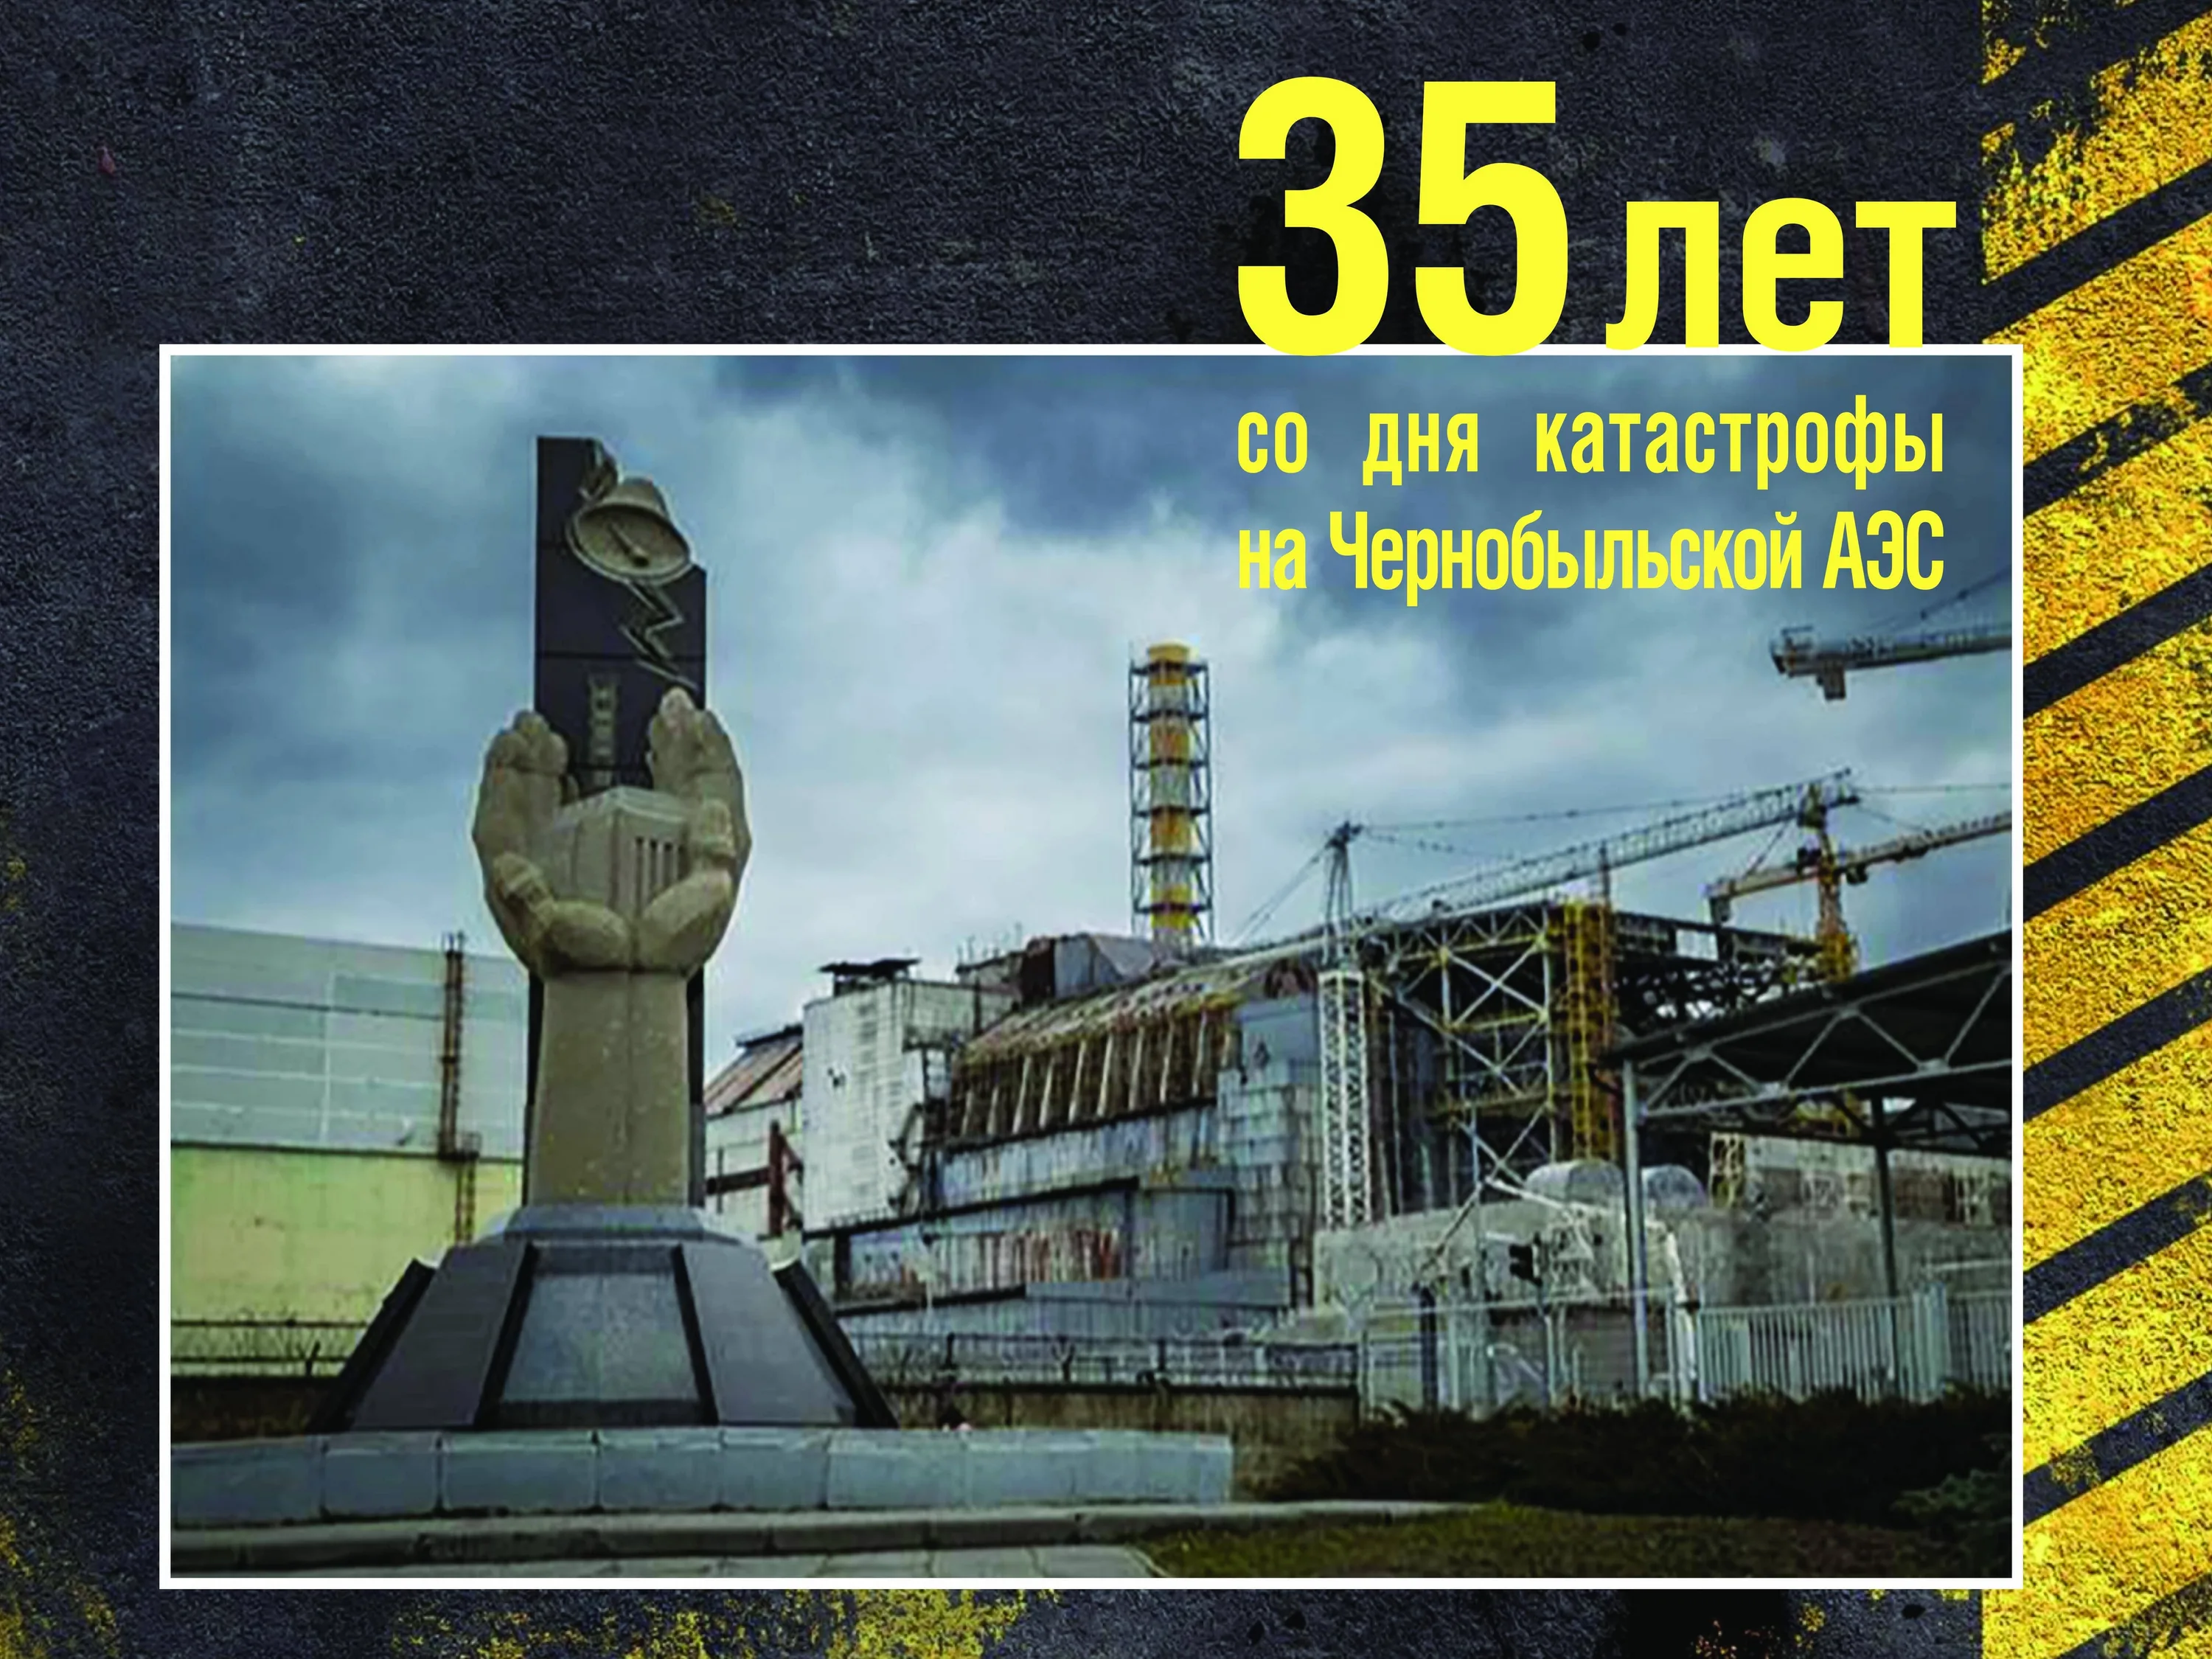 Международный день памяти о чернобыльской катастрофе. 26 Апреля 1986 день памяти Чернобыльской АЭС. Чернобыль взрыв атомной станции 1986. ЧАЭС 26.04.1986. 35 Лет со дня аварии на Чернобыльской АЭС.